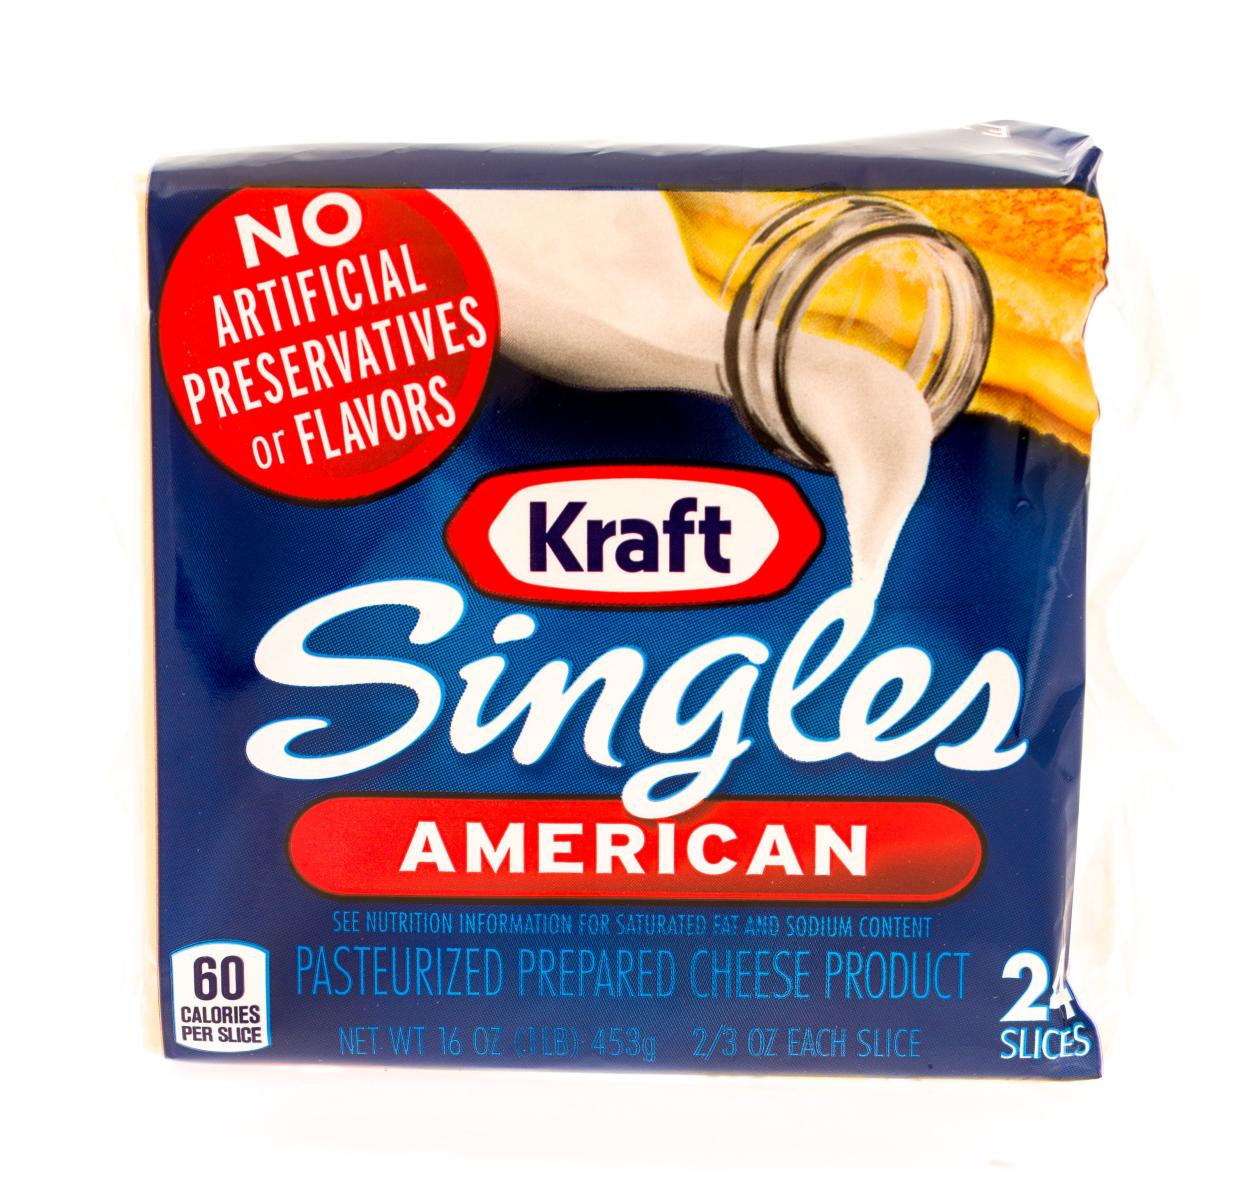 Package of Kraft singles American cheese